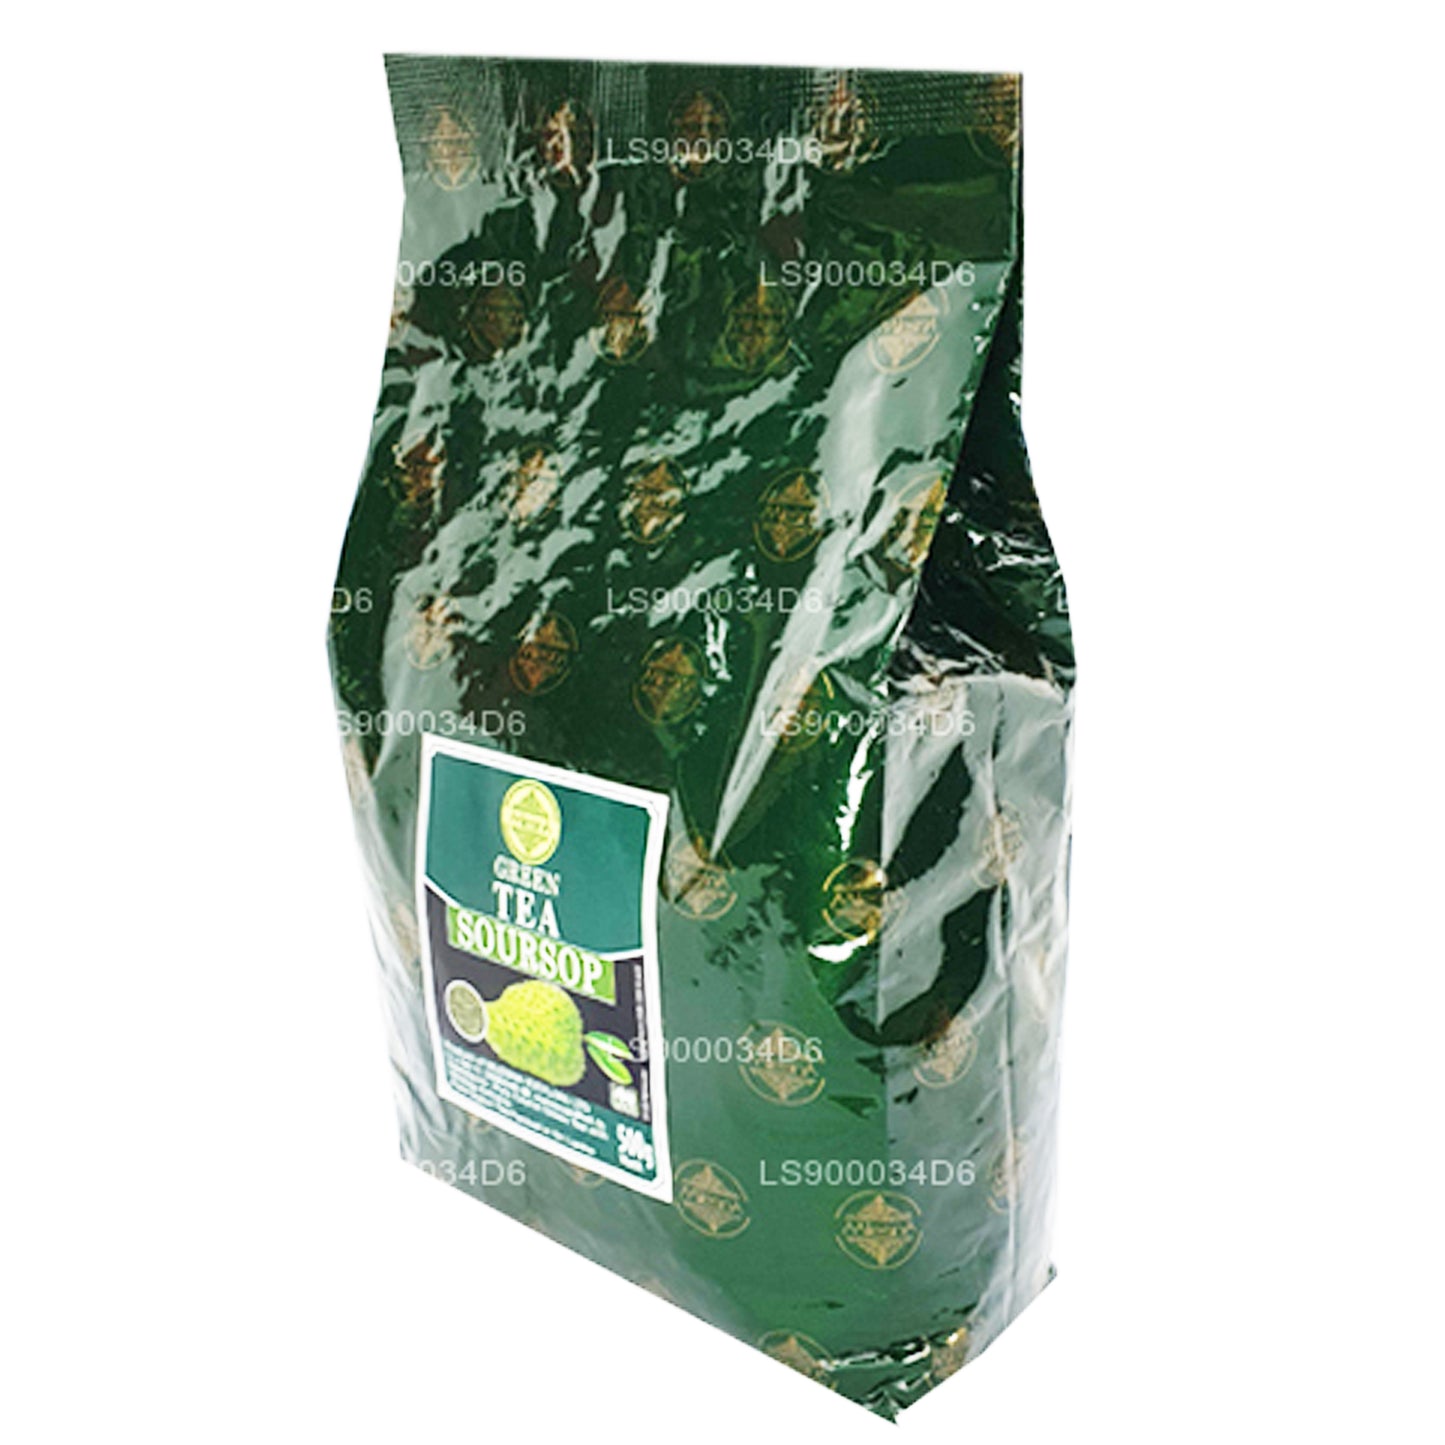 Mlesna Soursop Ceylon-Grüntee mit natürlichem Geschmack (500 g)